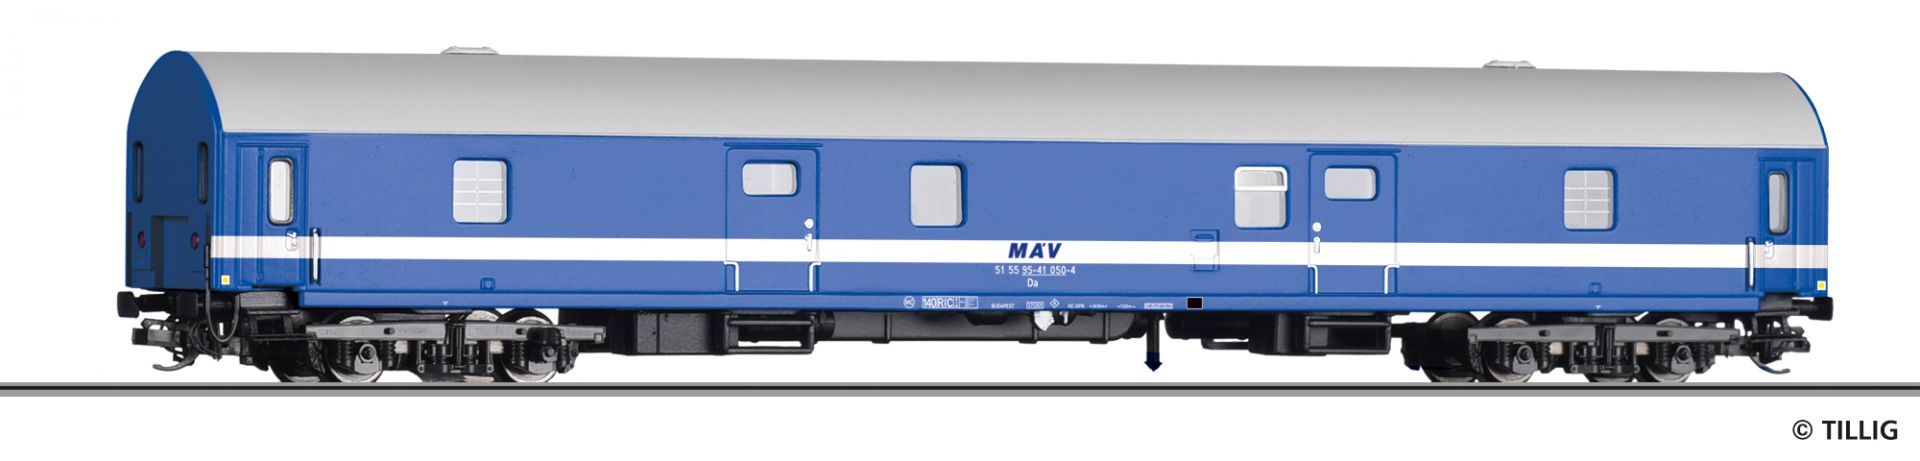 16820 | Gepäckwagen MAV